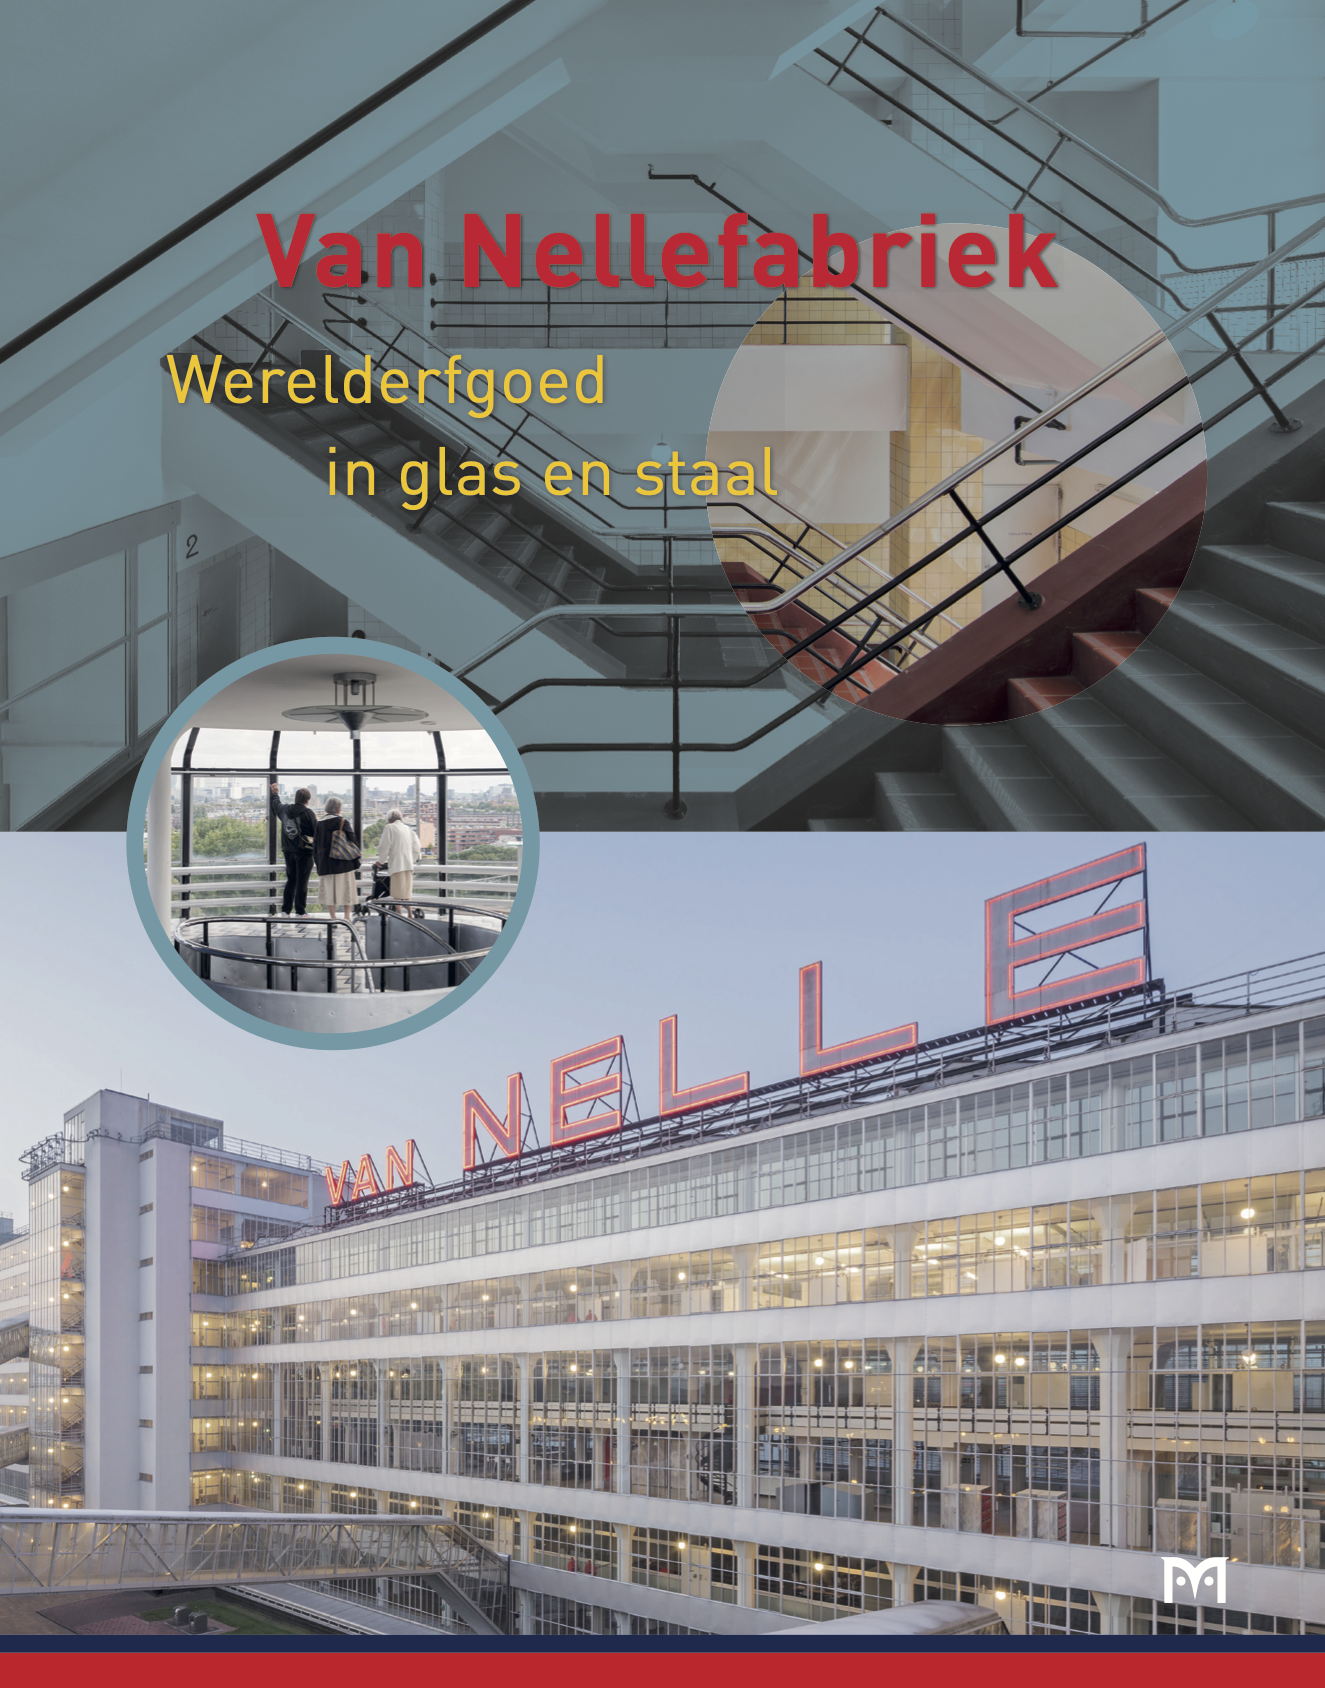 Voorzijde boek ‘Van Nellefabriek. Werelderfgoed in glas en staal’ uitgeverij Matrijs.